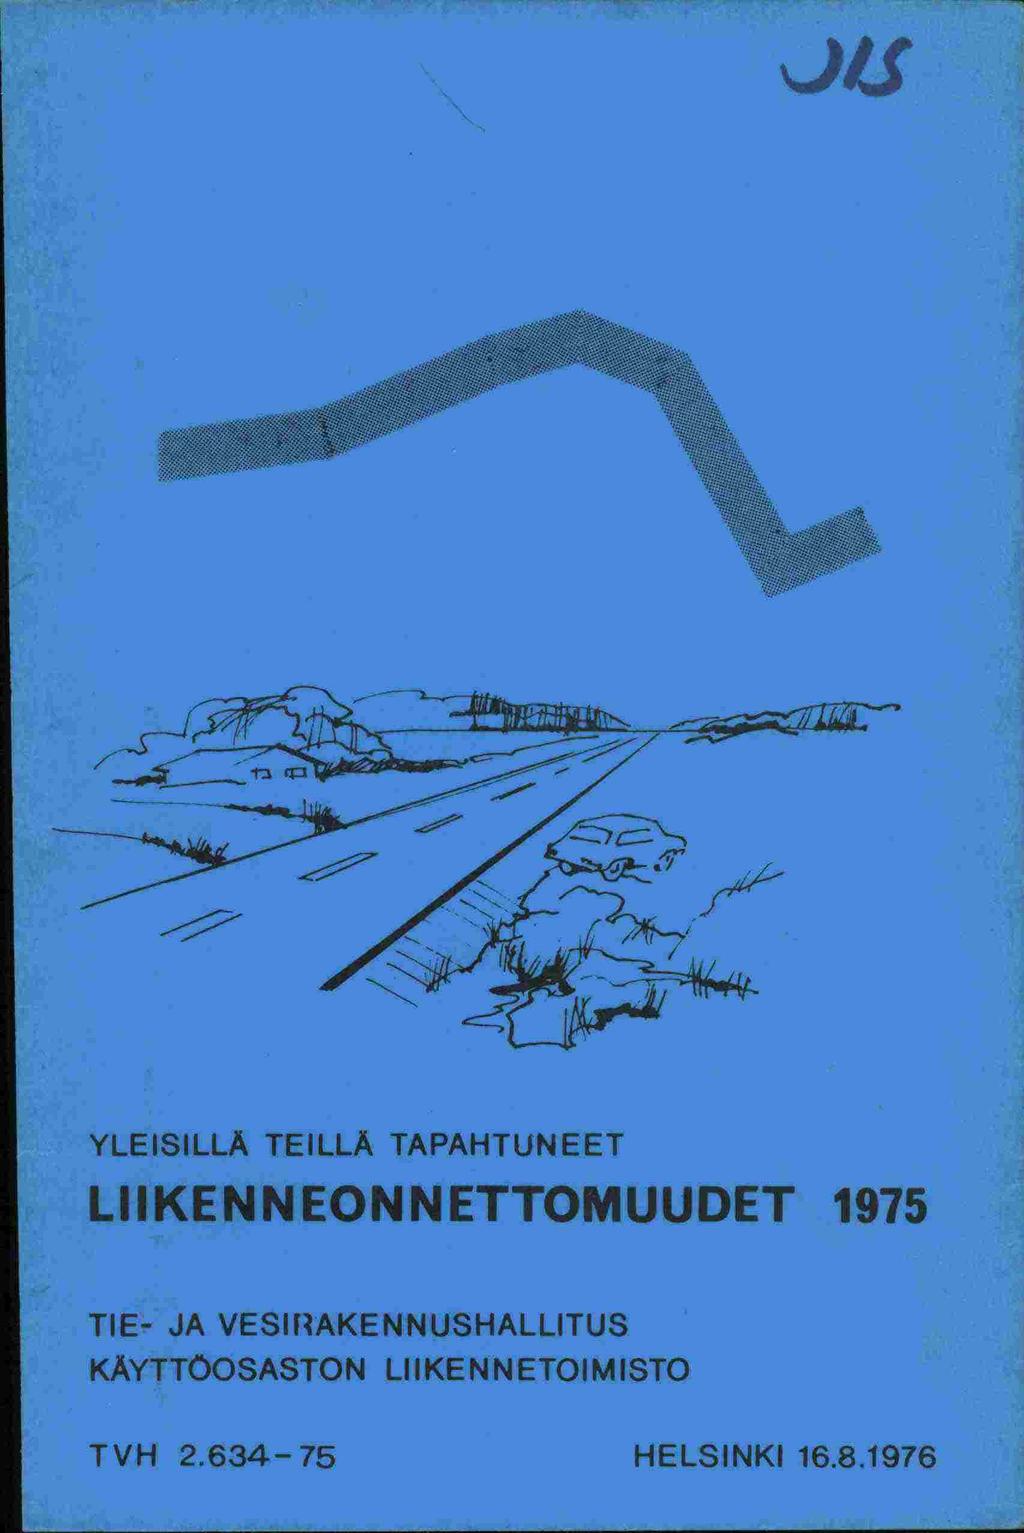 "Ii L YLEISILLÄ TEILLÄ TAPAHTUNEET LIIKENNEONNETTOMUUDET 1975 TIE- JA